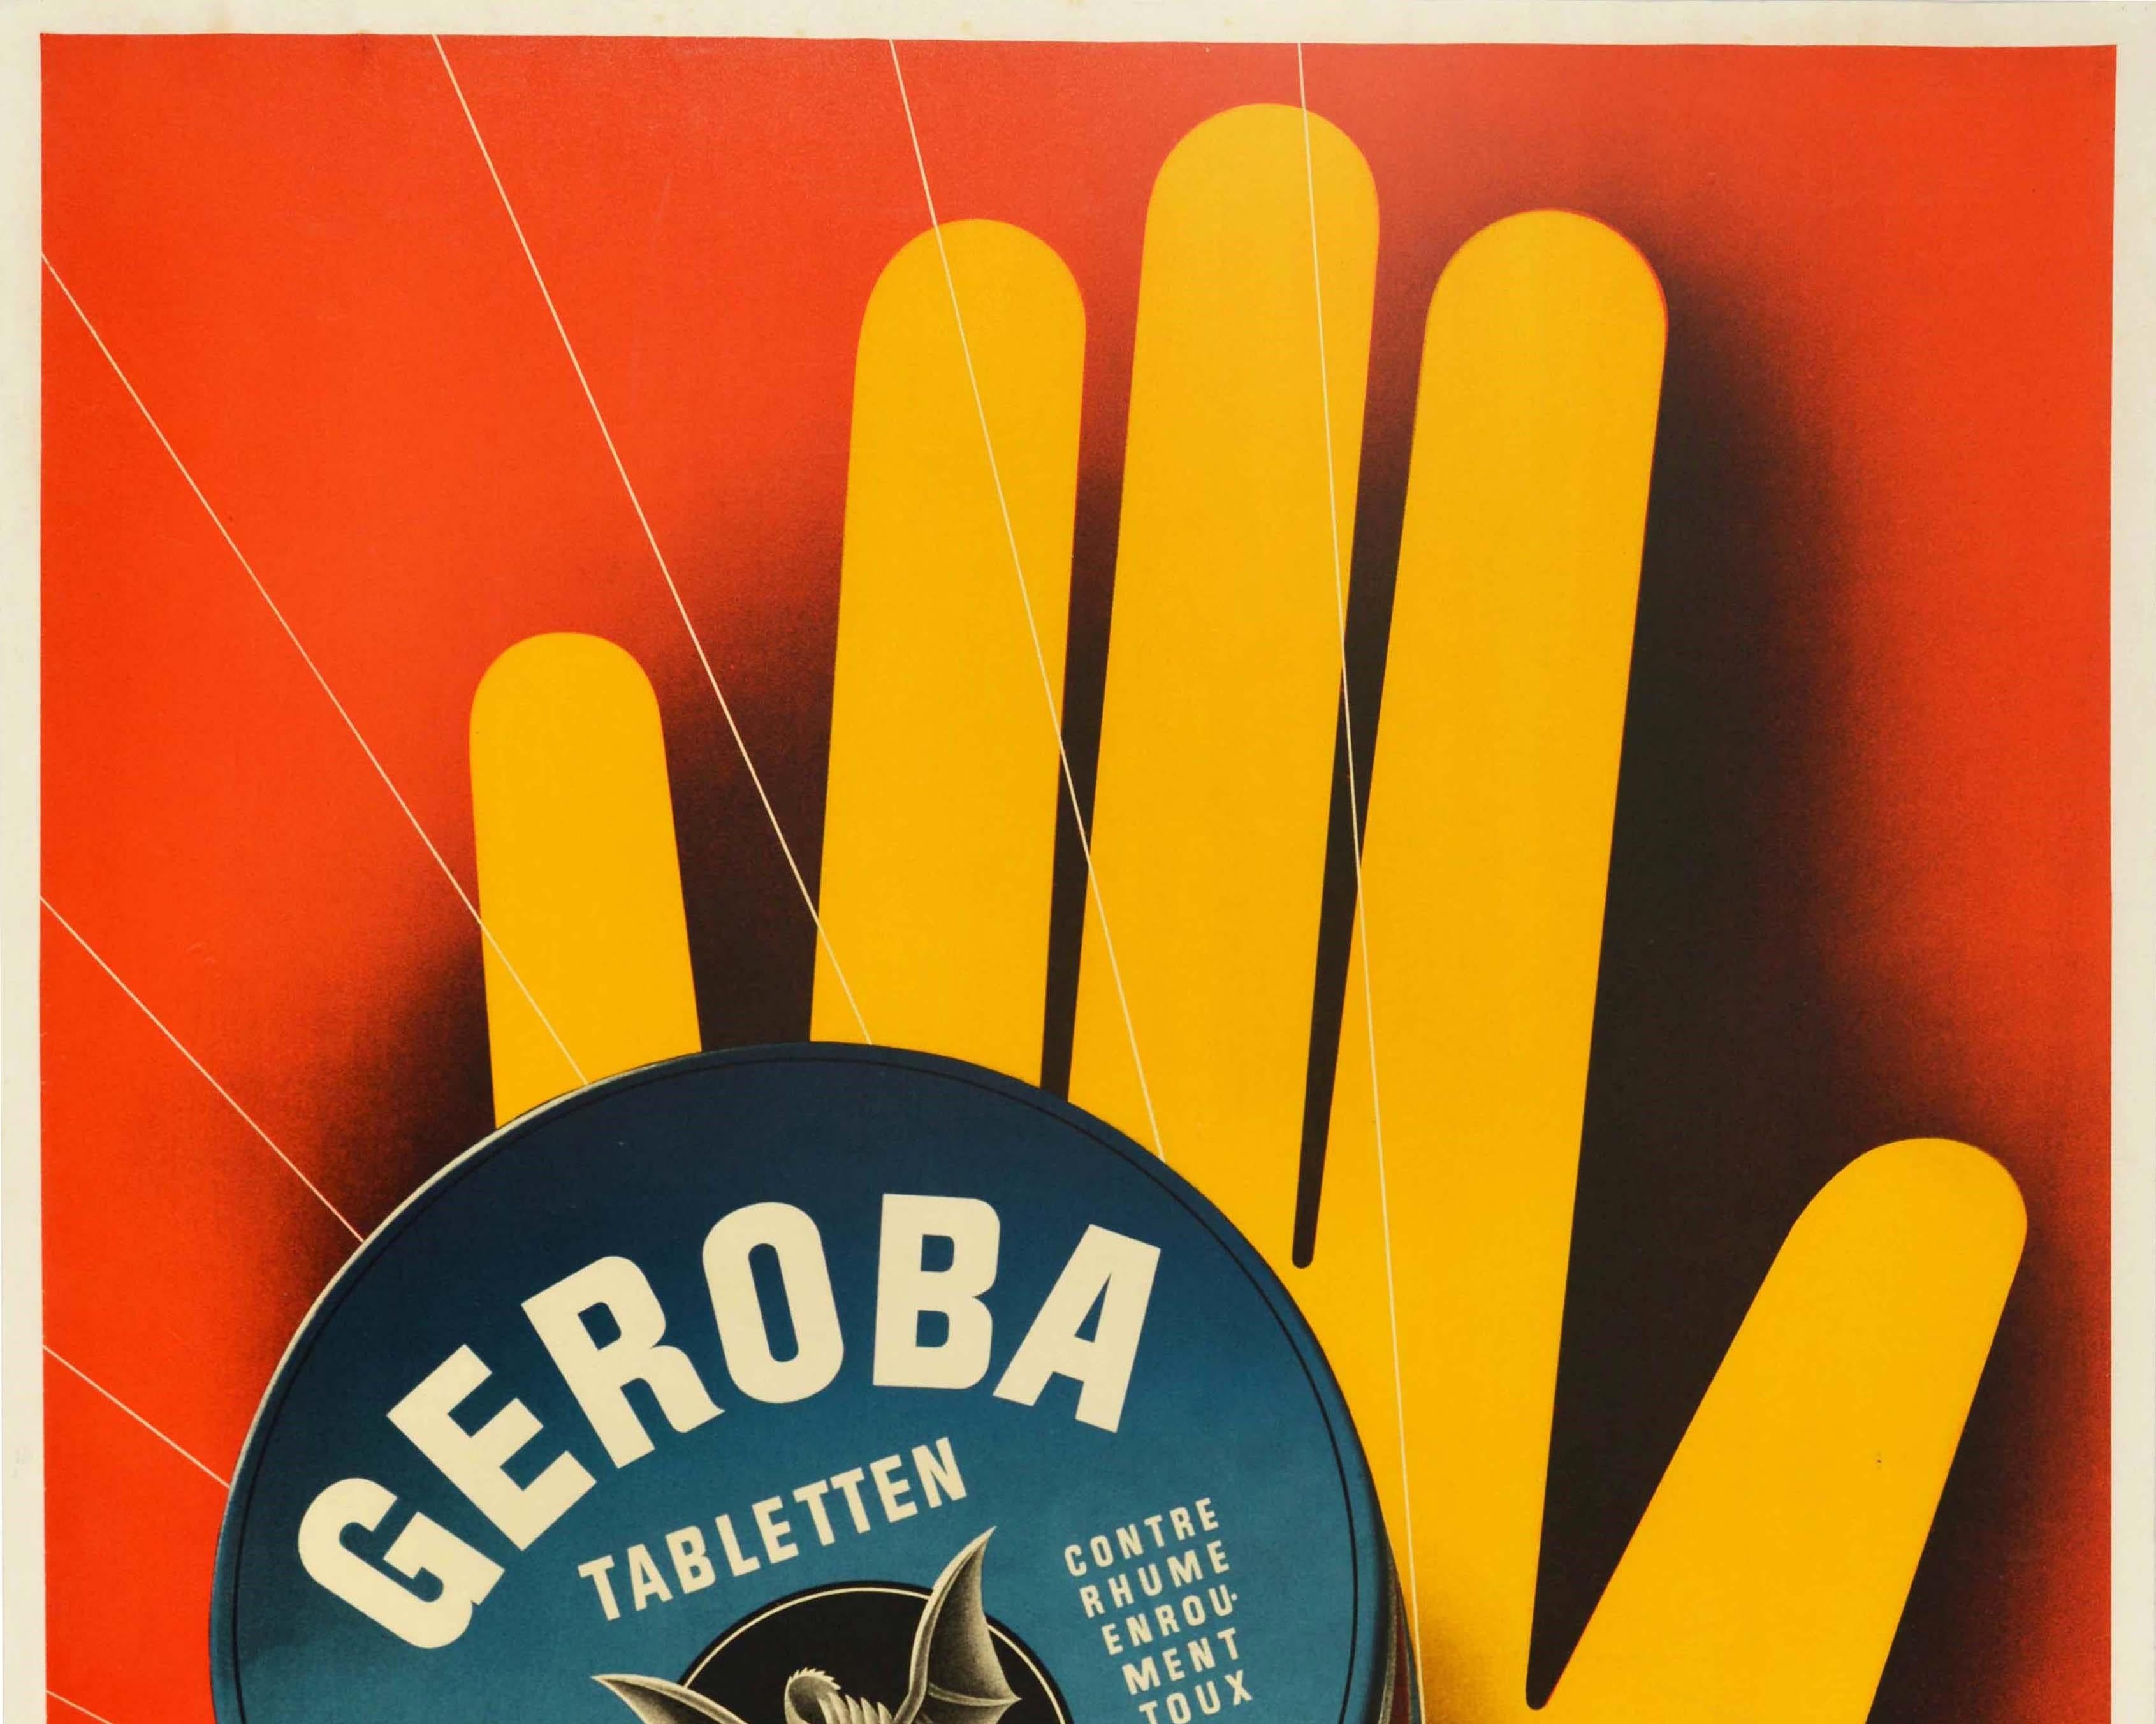 Affiche publicitaire originale pour les pastilles contre la toux Geroba, avec une superbe illustration graphique d'Edi Hauri (1911-1988) représentant une main jaune brandie comme un signal d'arrêt sur un fond rouge, tenant une boîte de tablettes